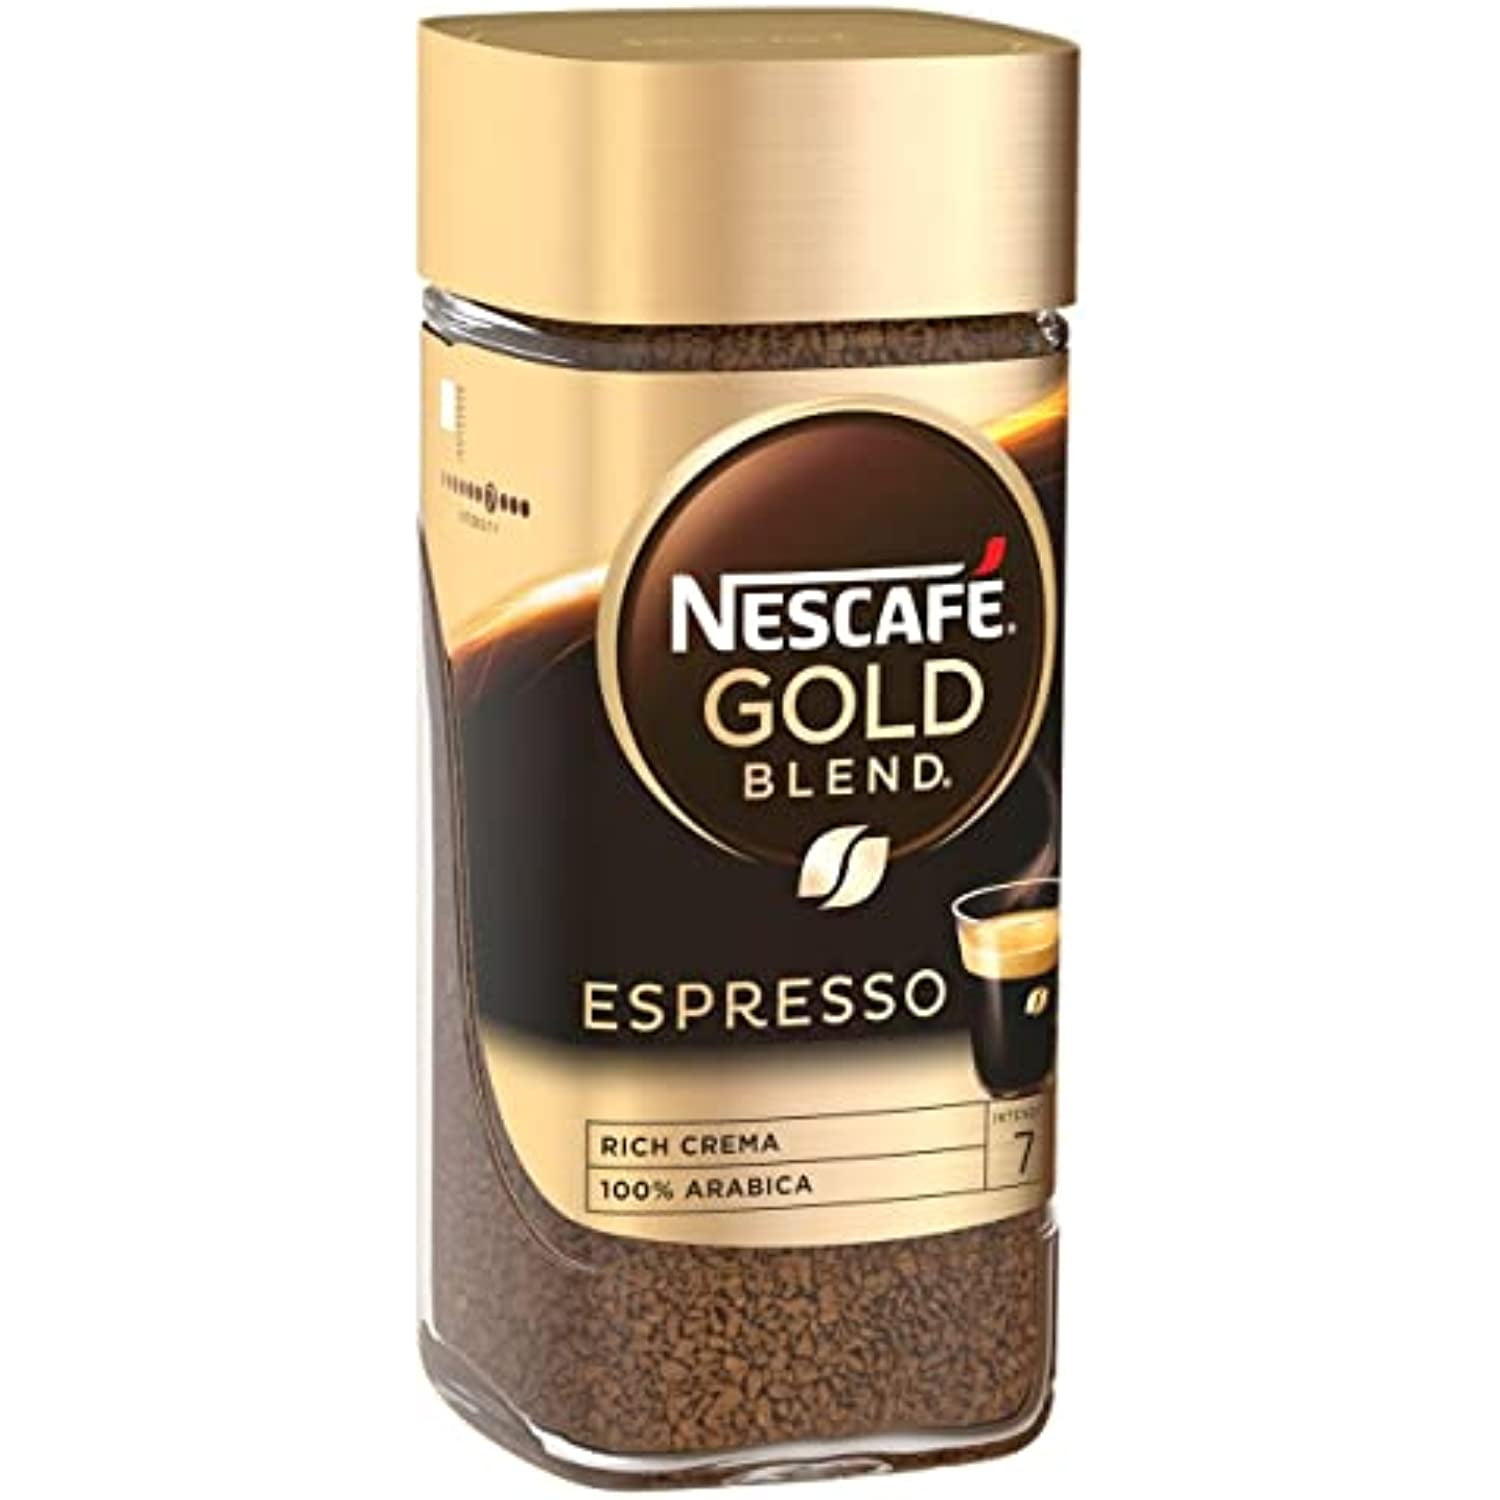 Nescafe Gold Expresso 100% Arabica Coffee 95g